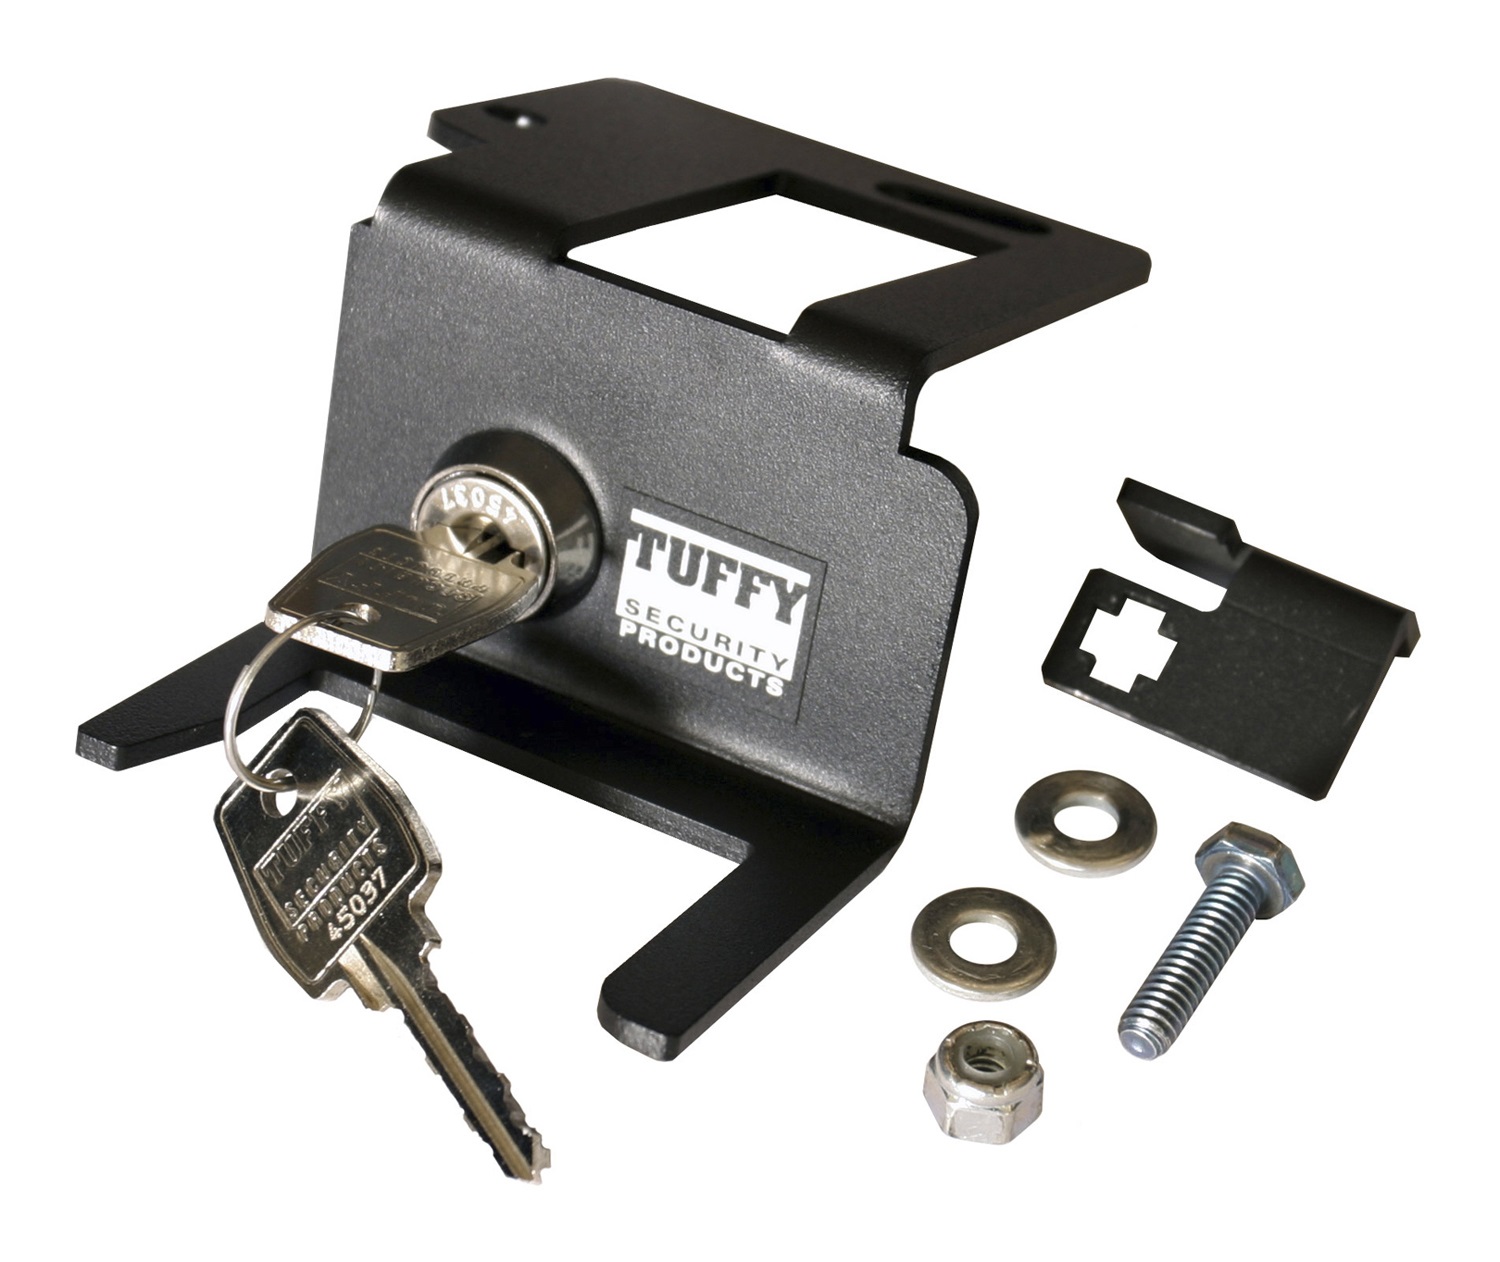 Tuffy Security Products Tuffy Security Products 137-01 Hood Lock Fits 97-06 Wrangler (LJ) Wrangler (TJ)